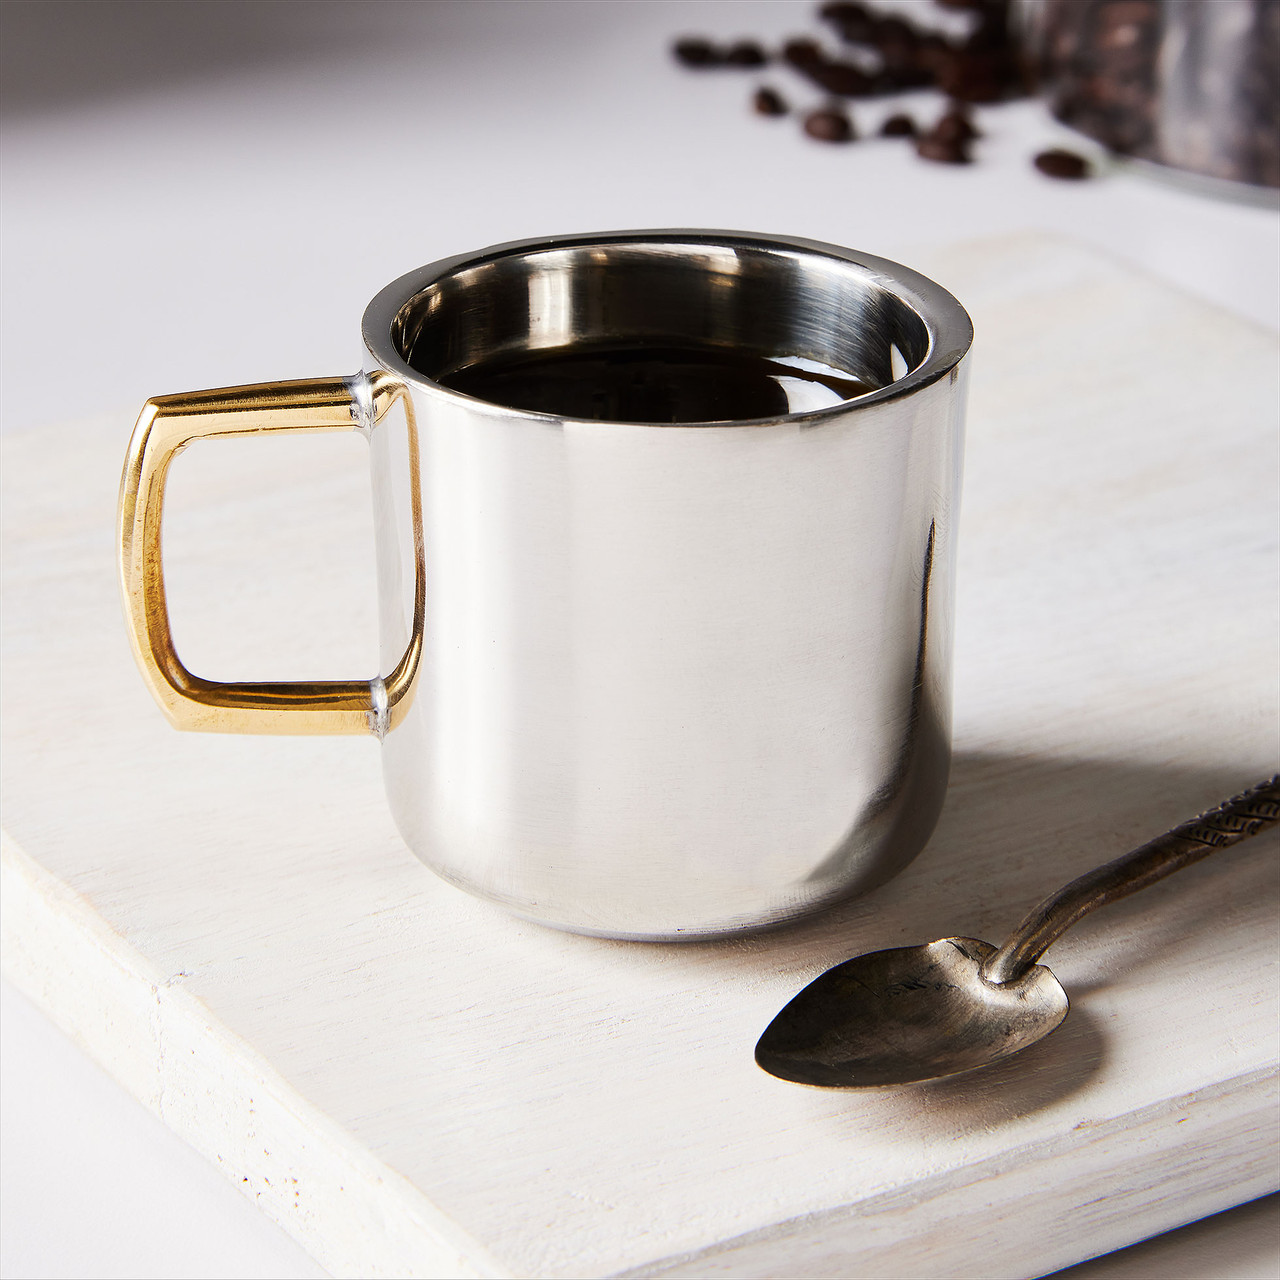 Stainless Steel Coffee Mugs, Metal Coffee Tea Cup Mug Double Wall